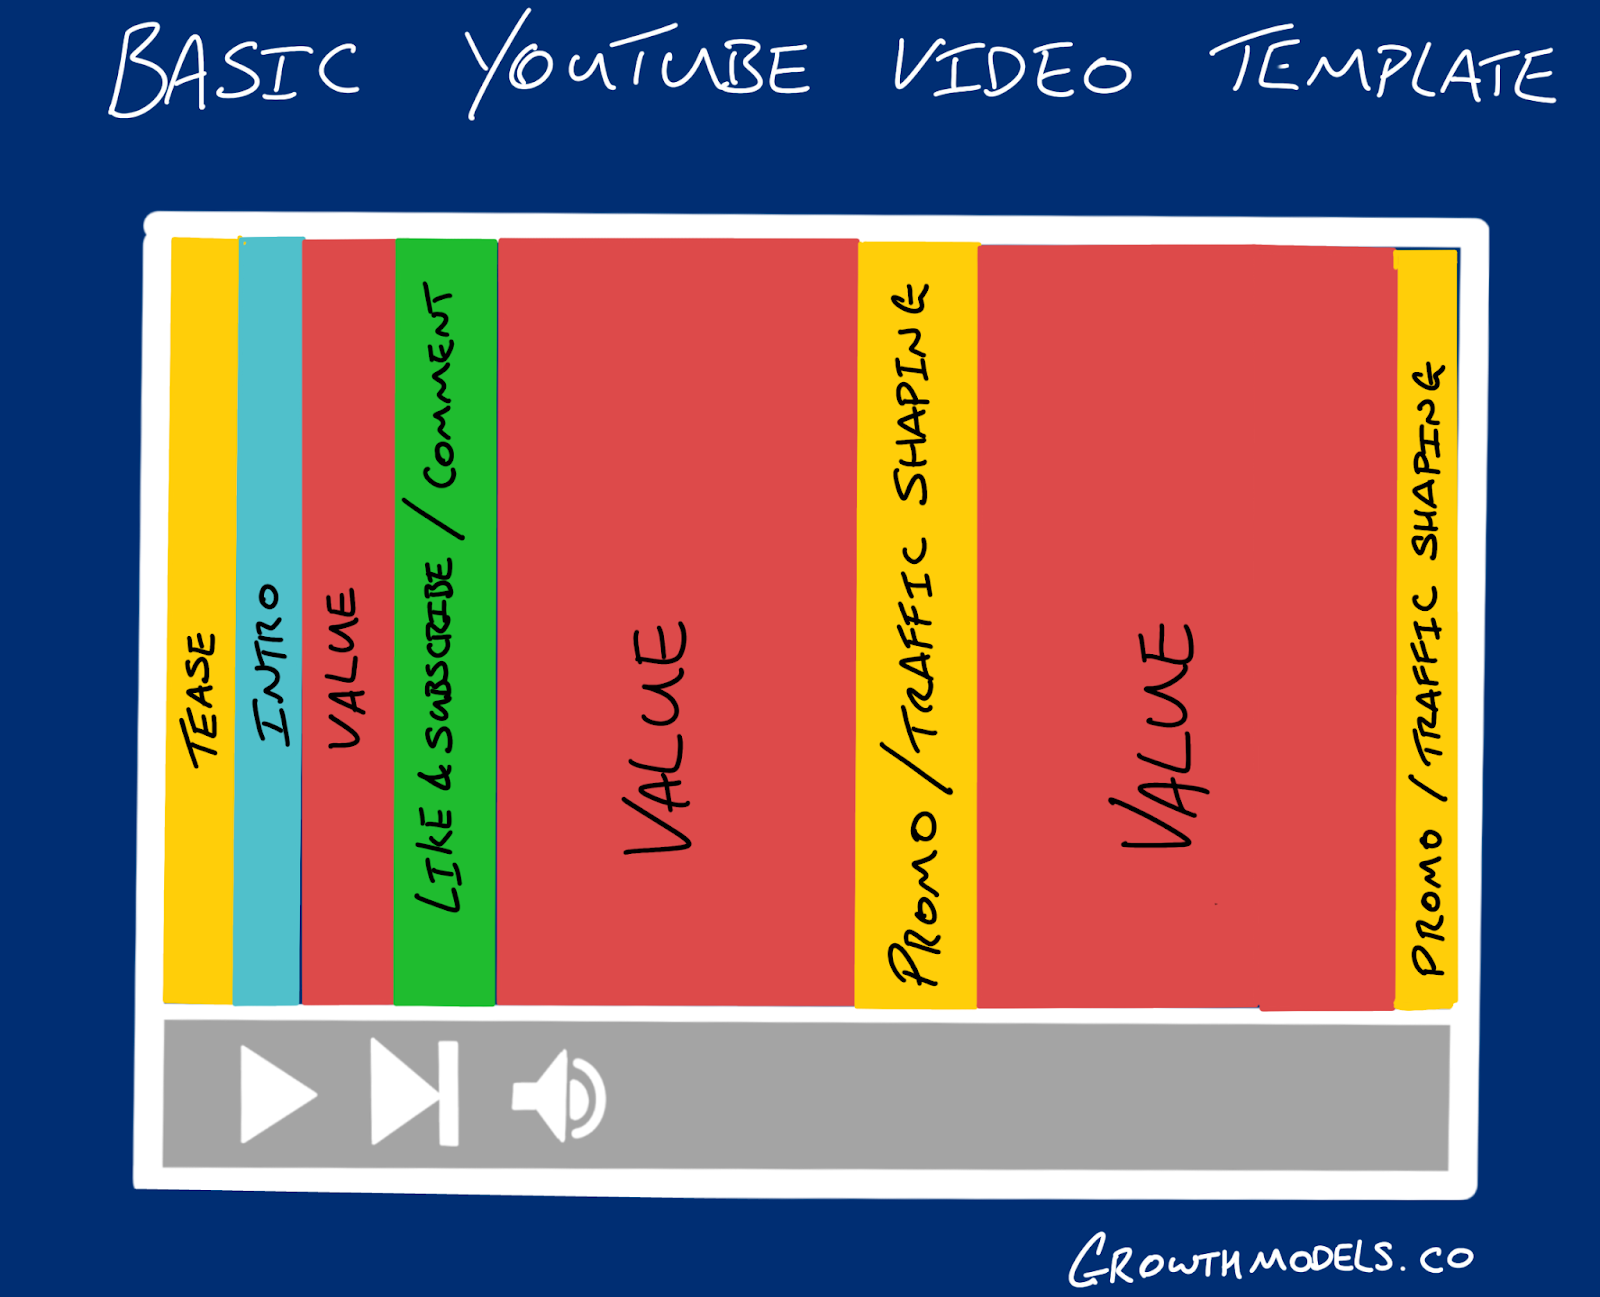 youtube for brands case study slideshare